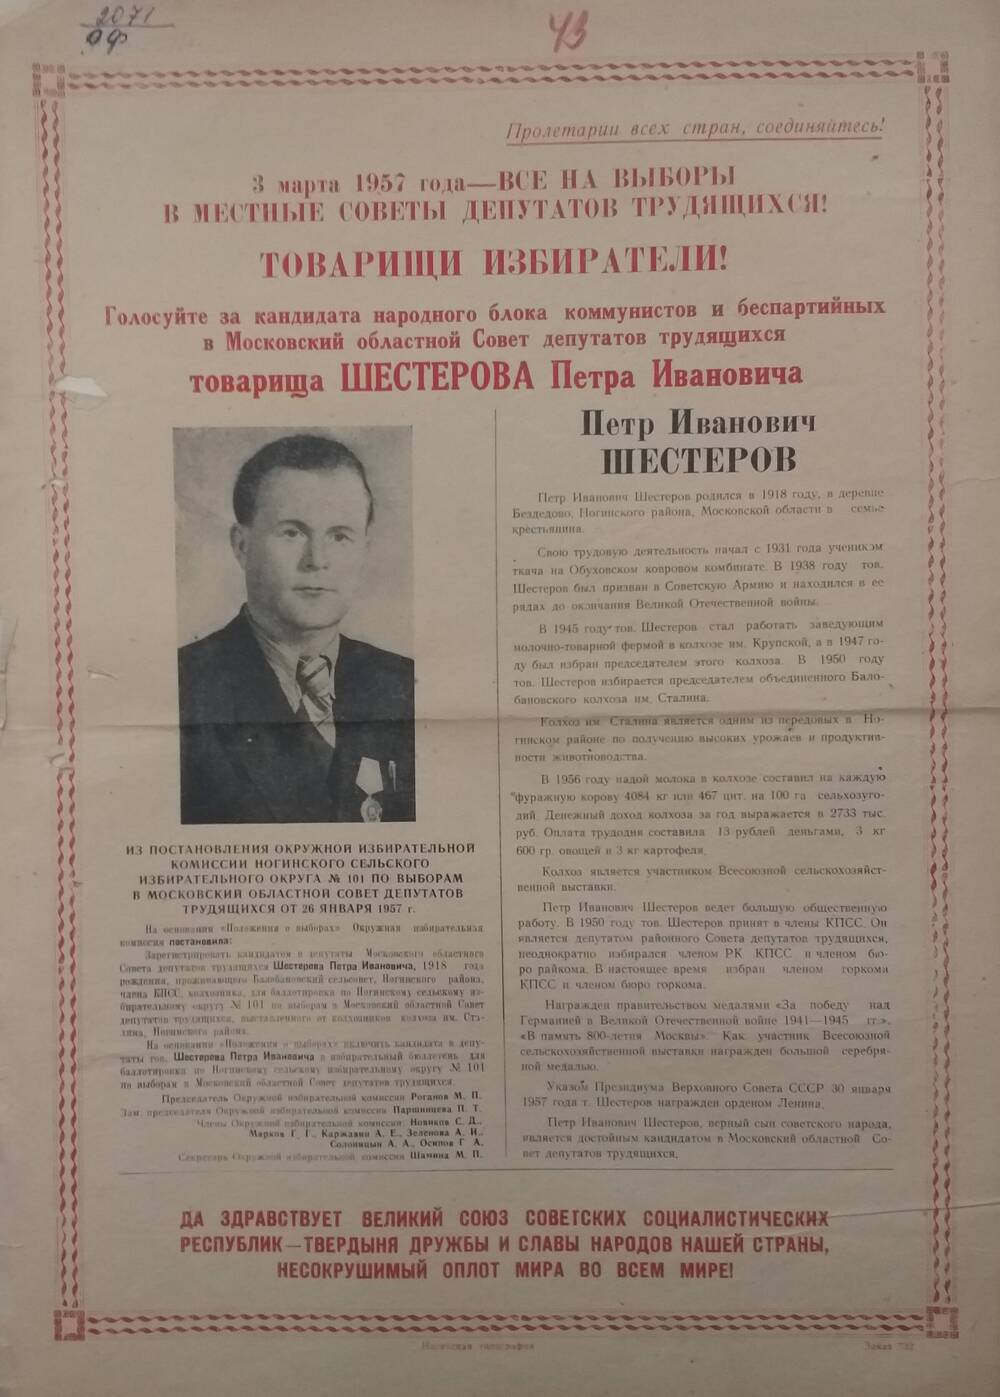 Плакат Призыв голосовать на выборах 3 марта 1957 года за товарища Шестерова Петра Ивановича - председателя объединённого Балобановского колхоза имени Сталина, 3 марта 957 год.